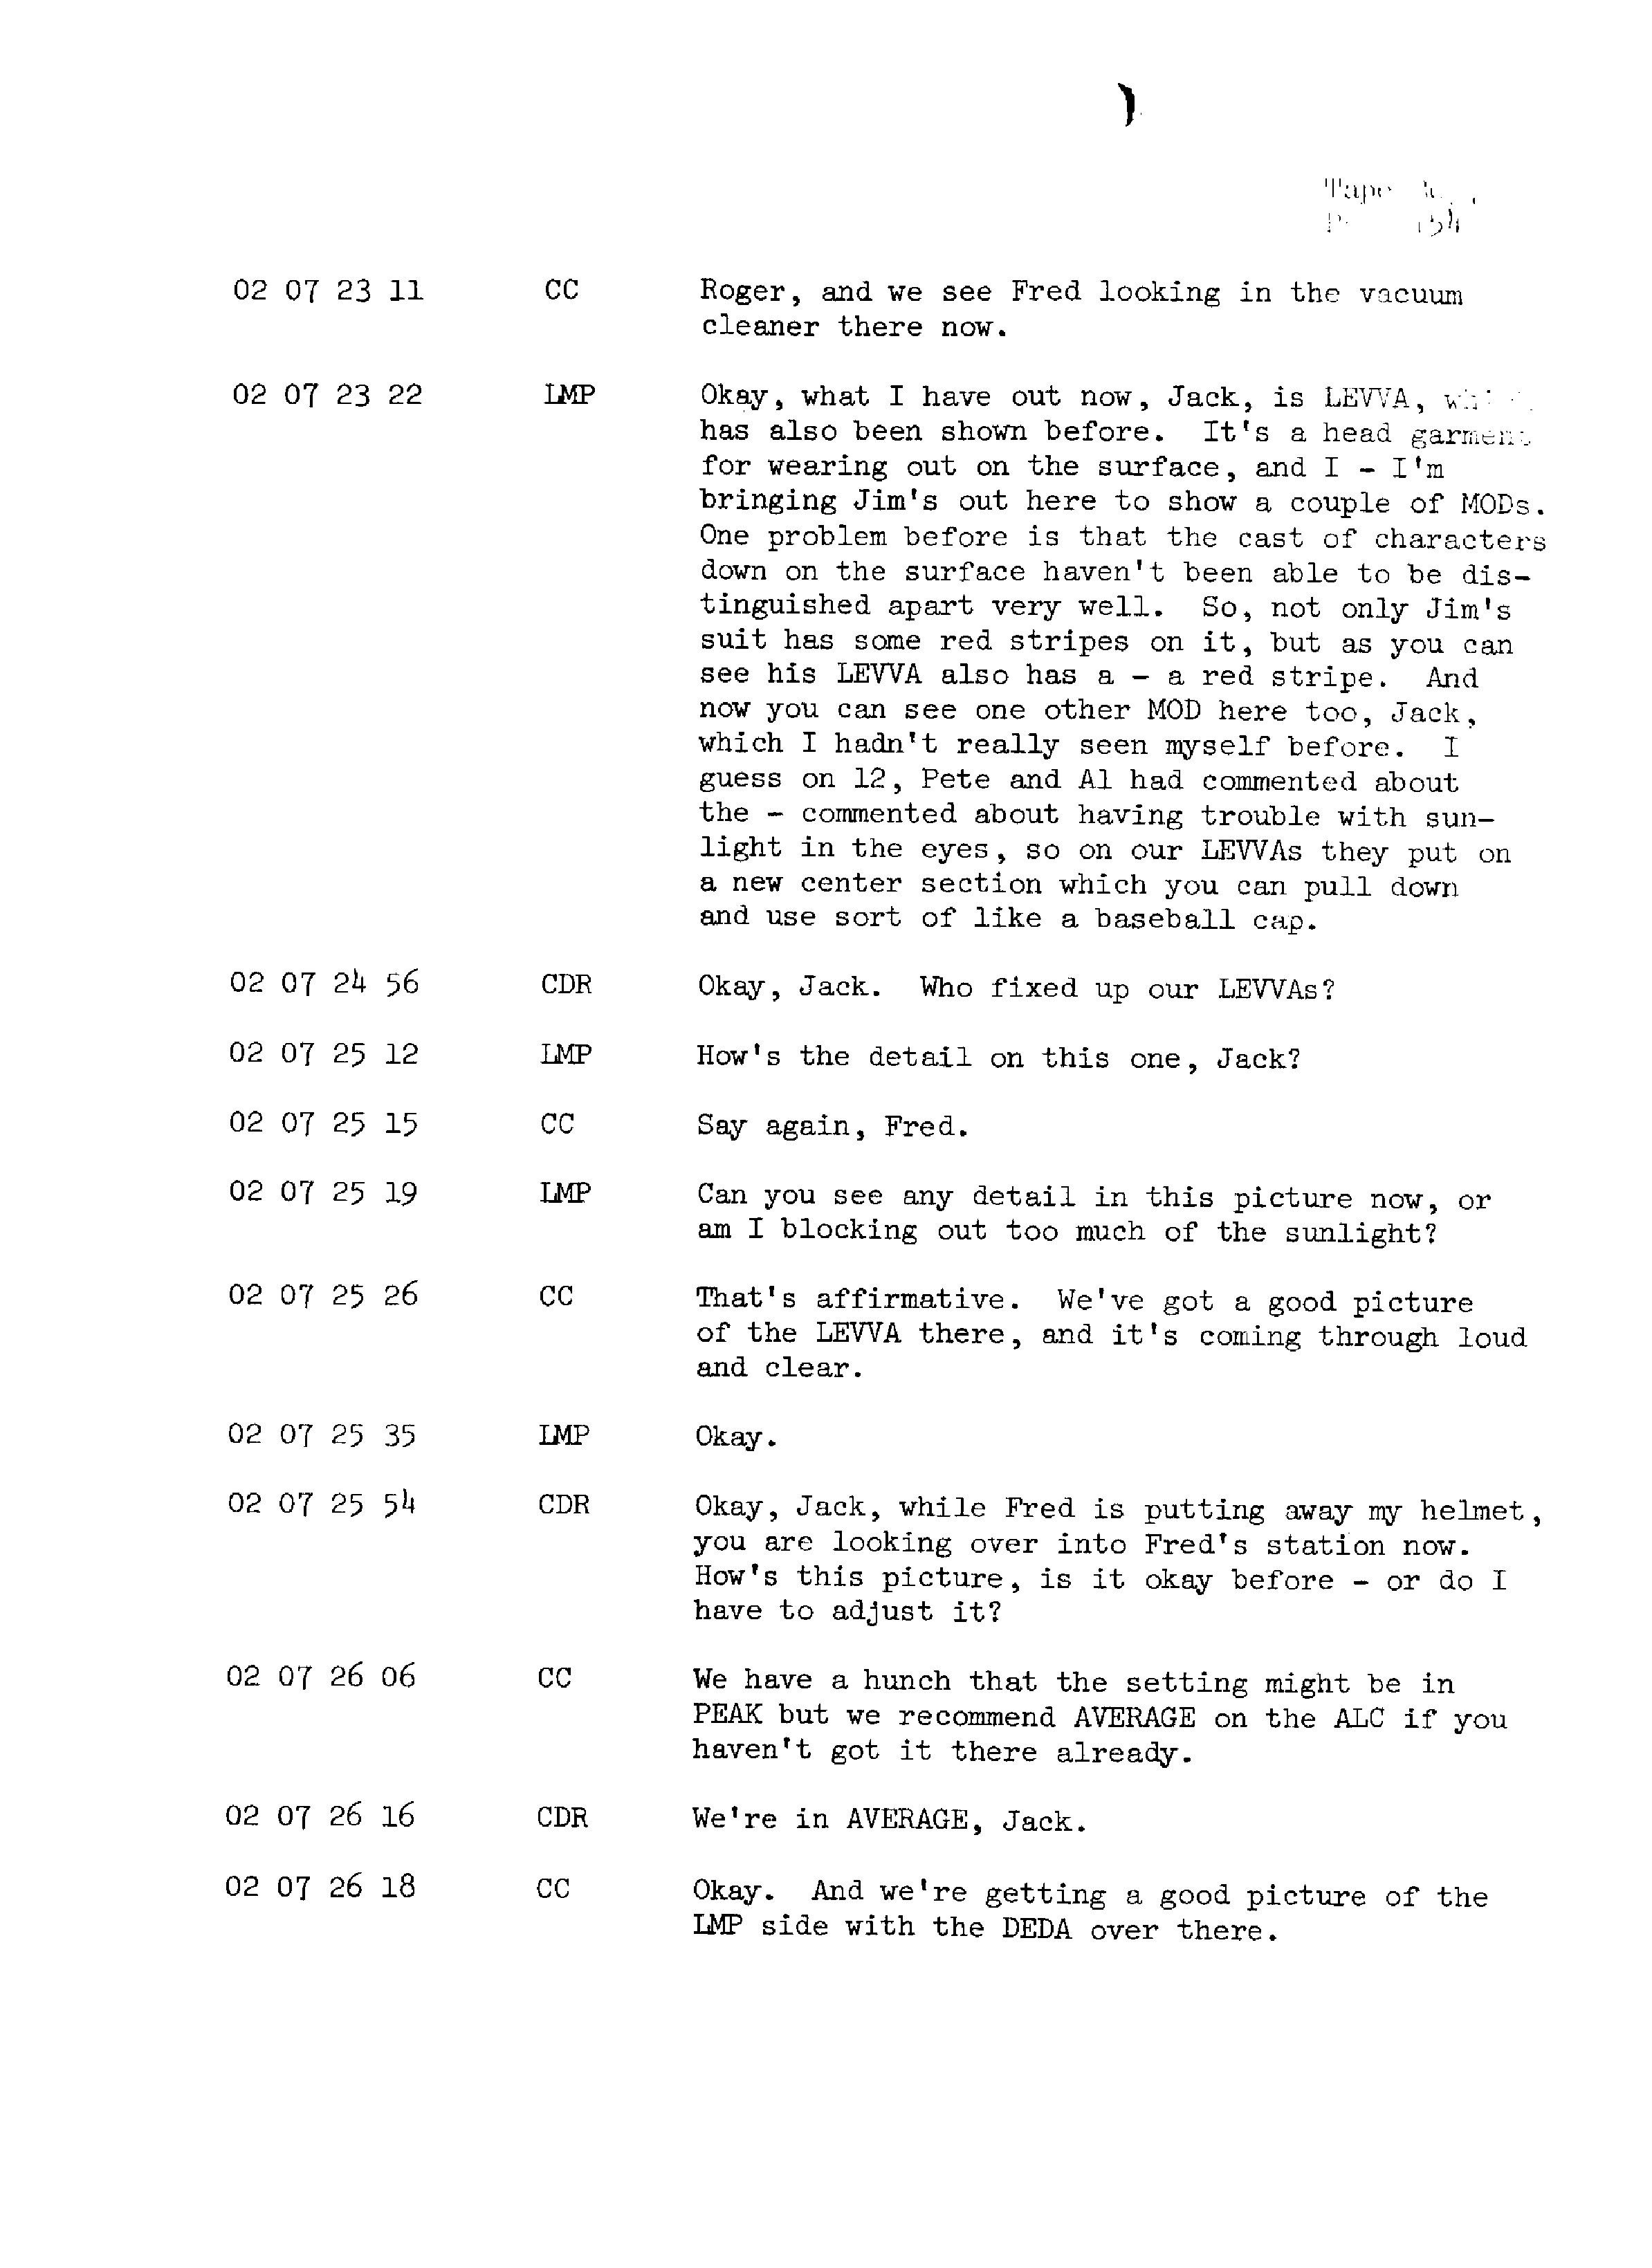 Page 161 of Apollo 13’s original transcript